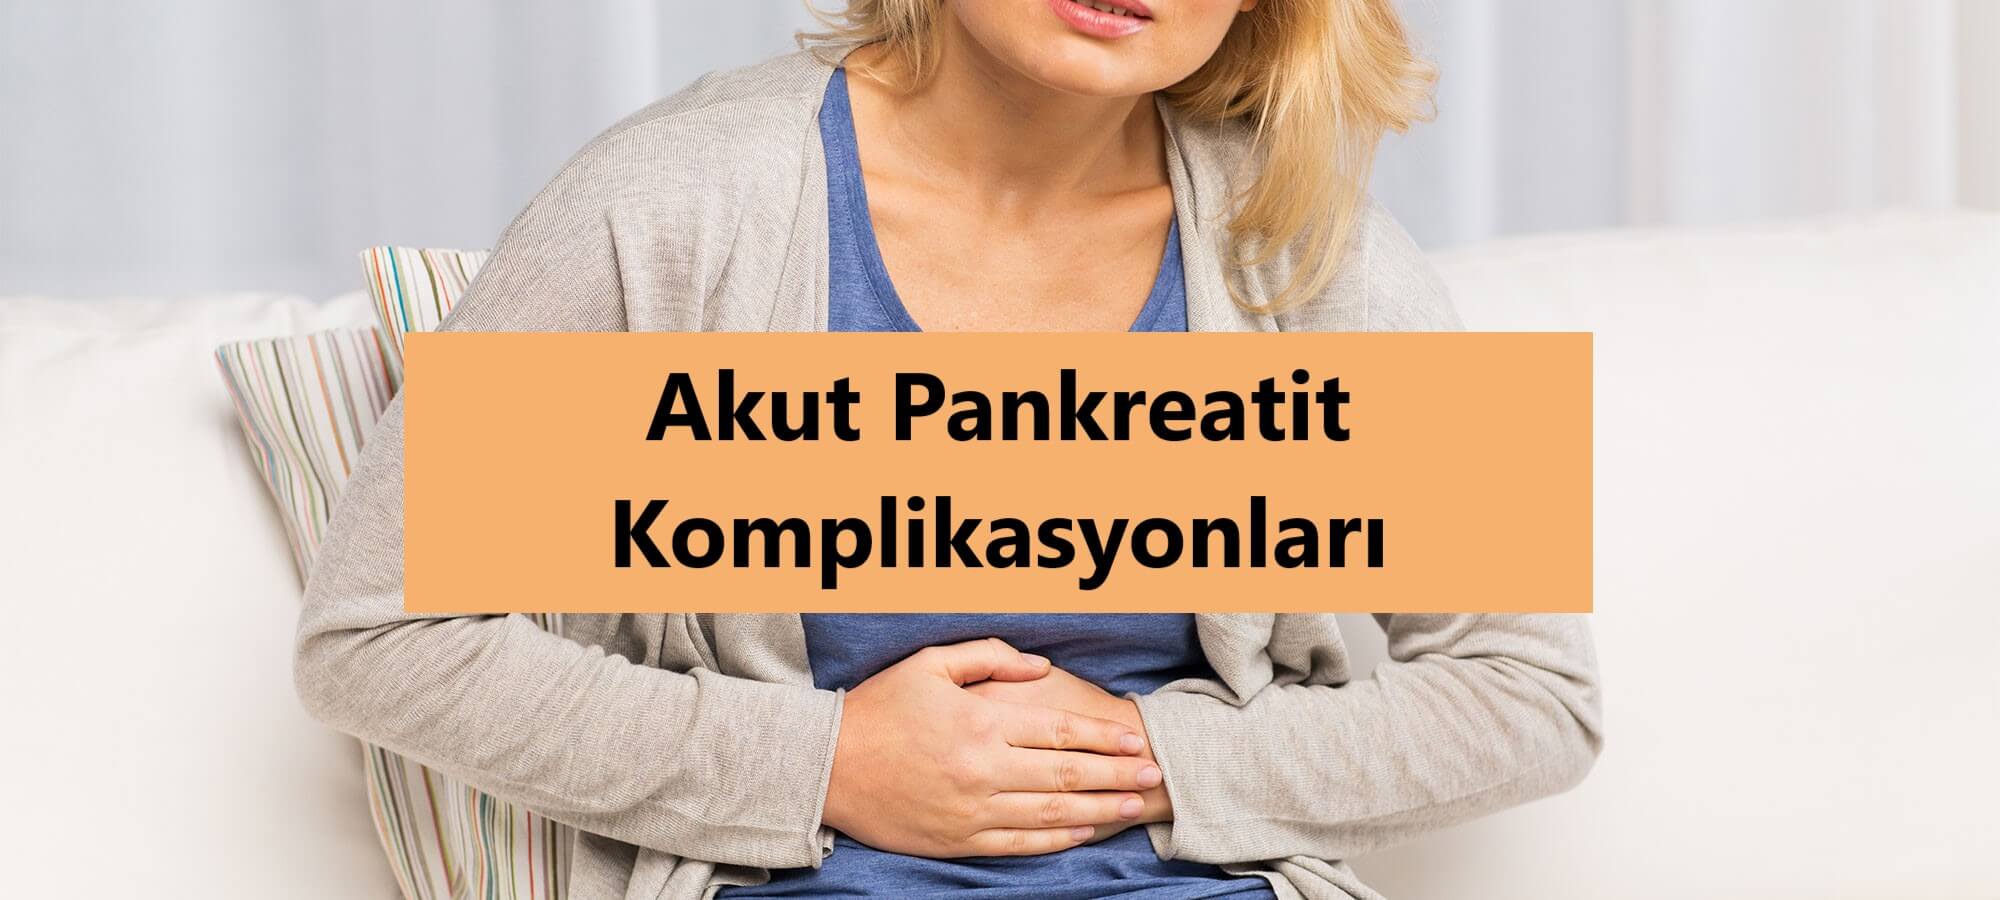 Akut Pankreatit Komplikasyonları